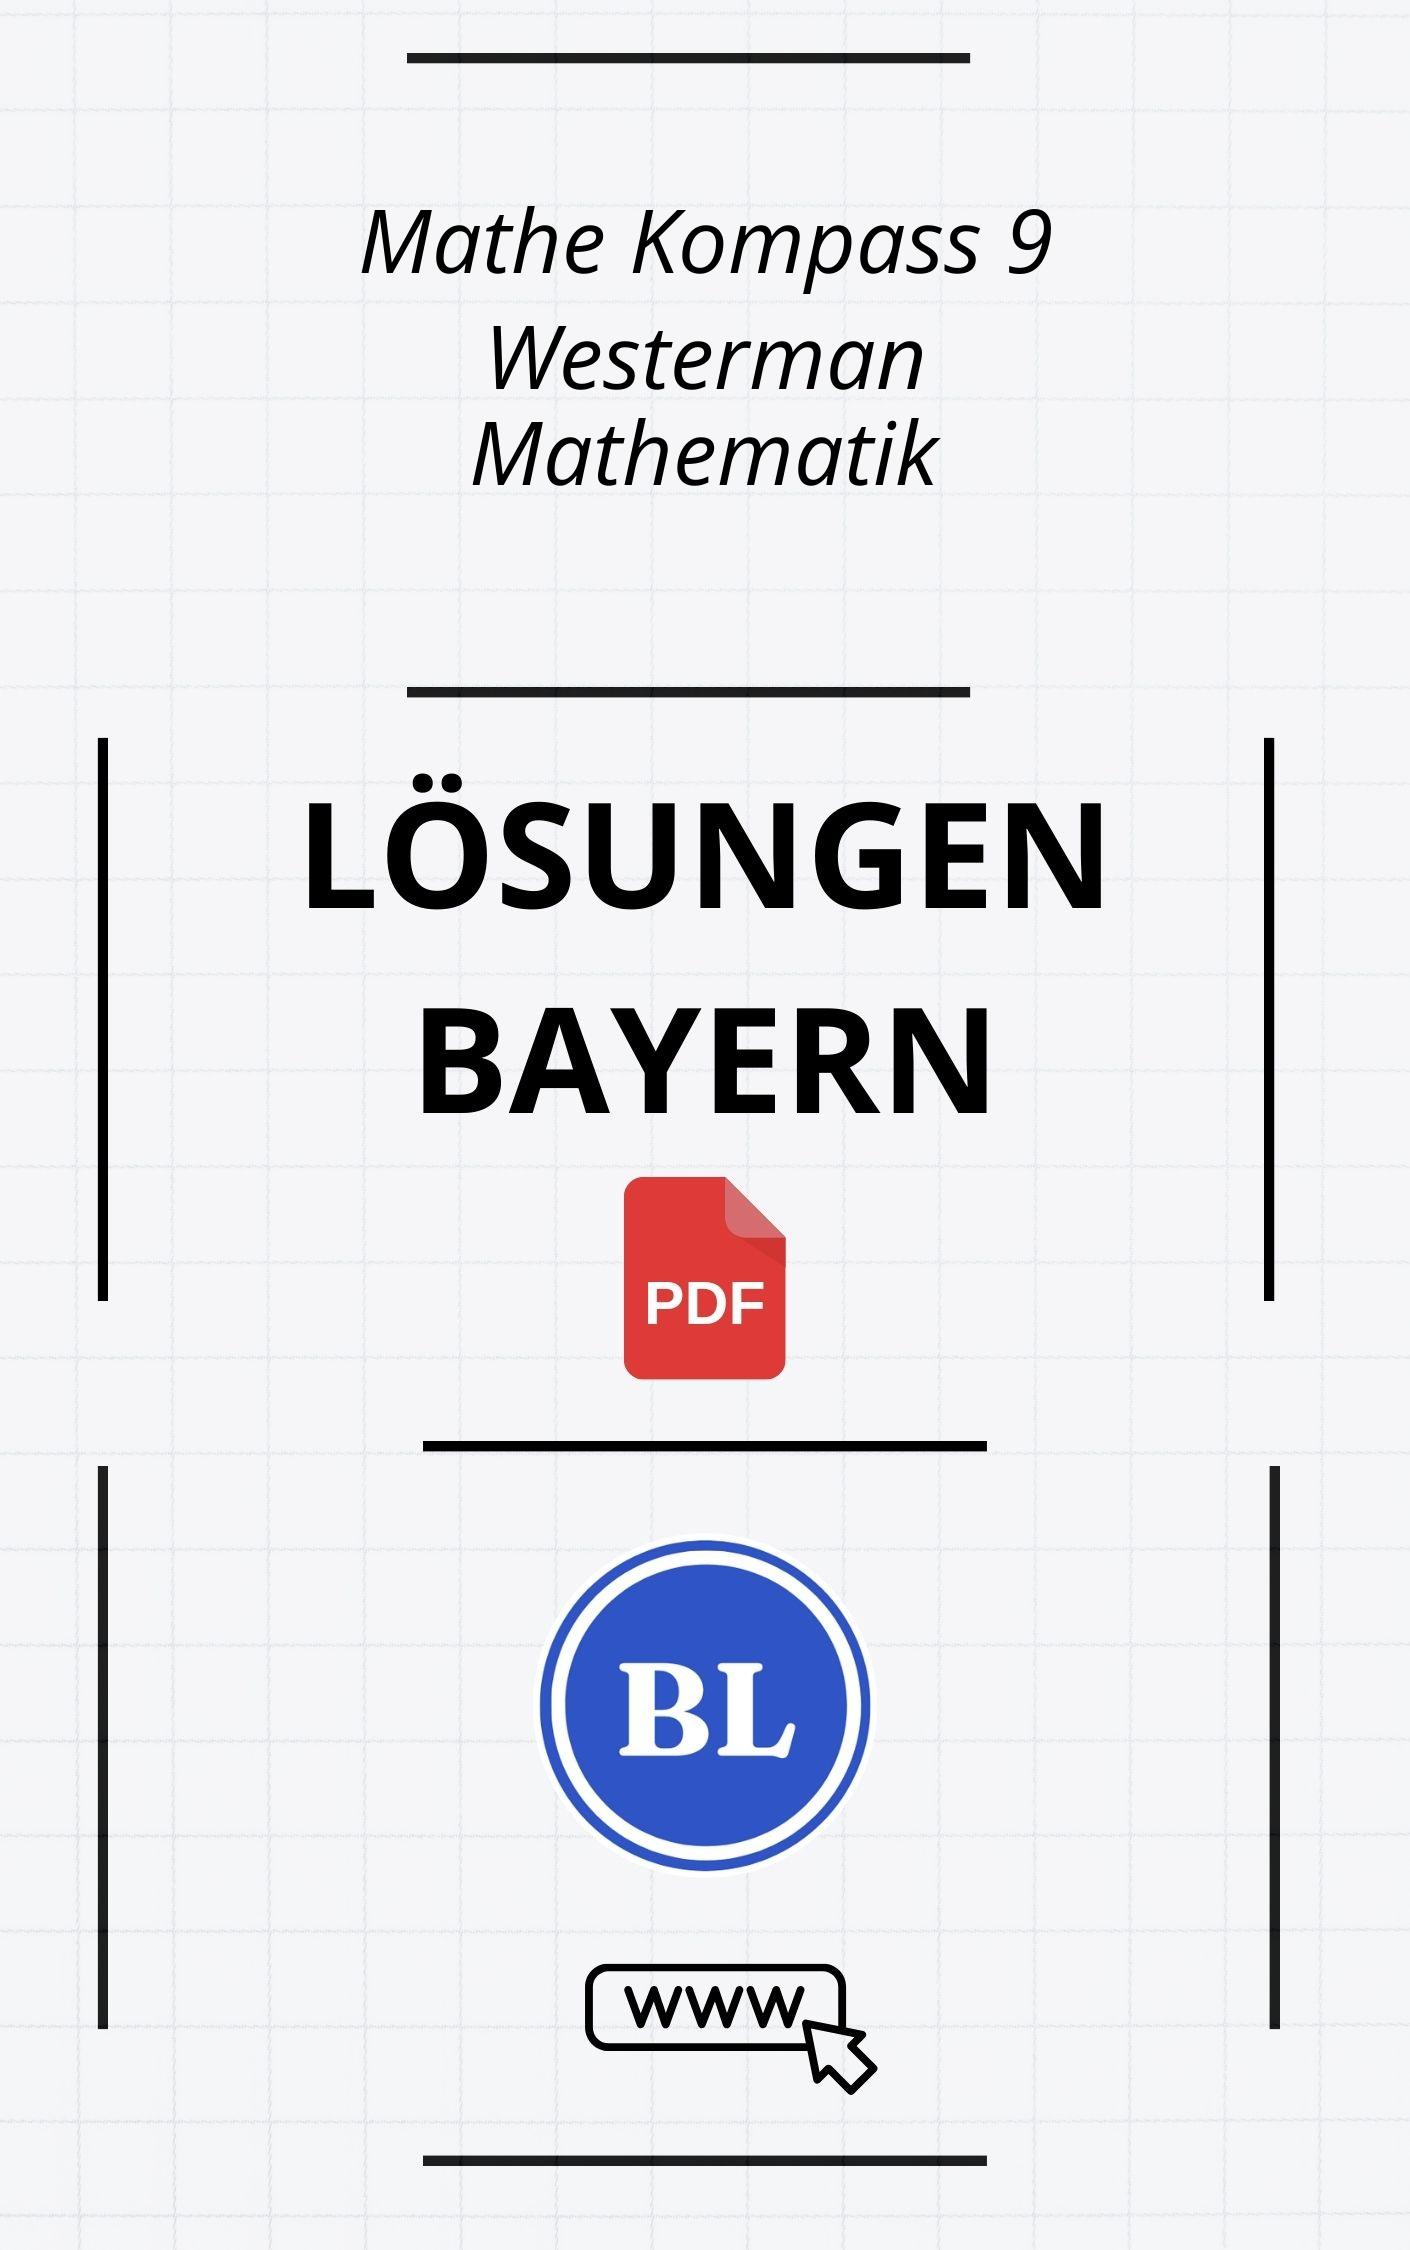 Mathe Kompass 9 Lösungen Bayern